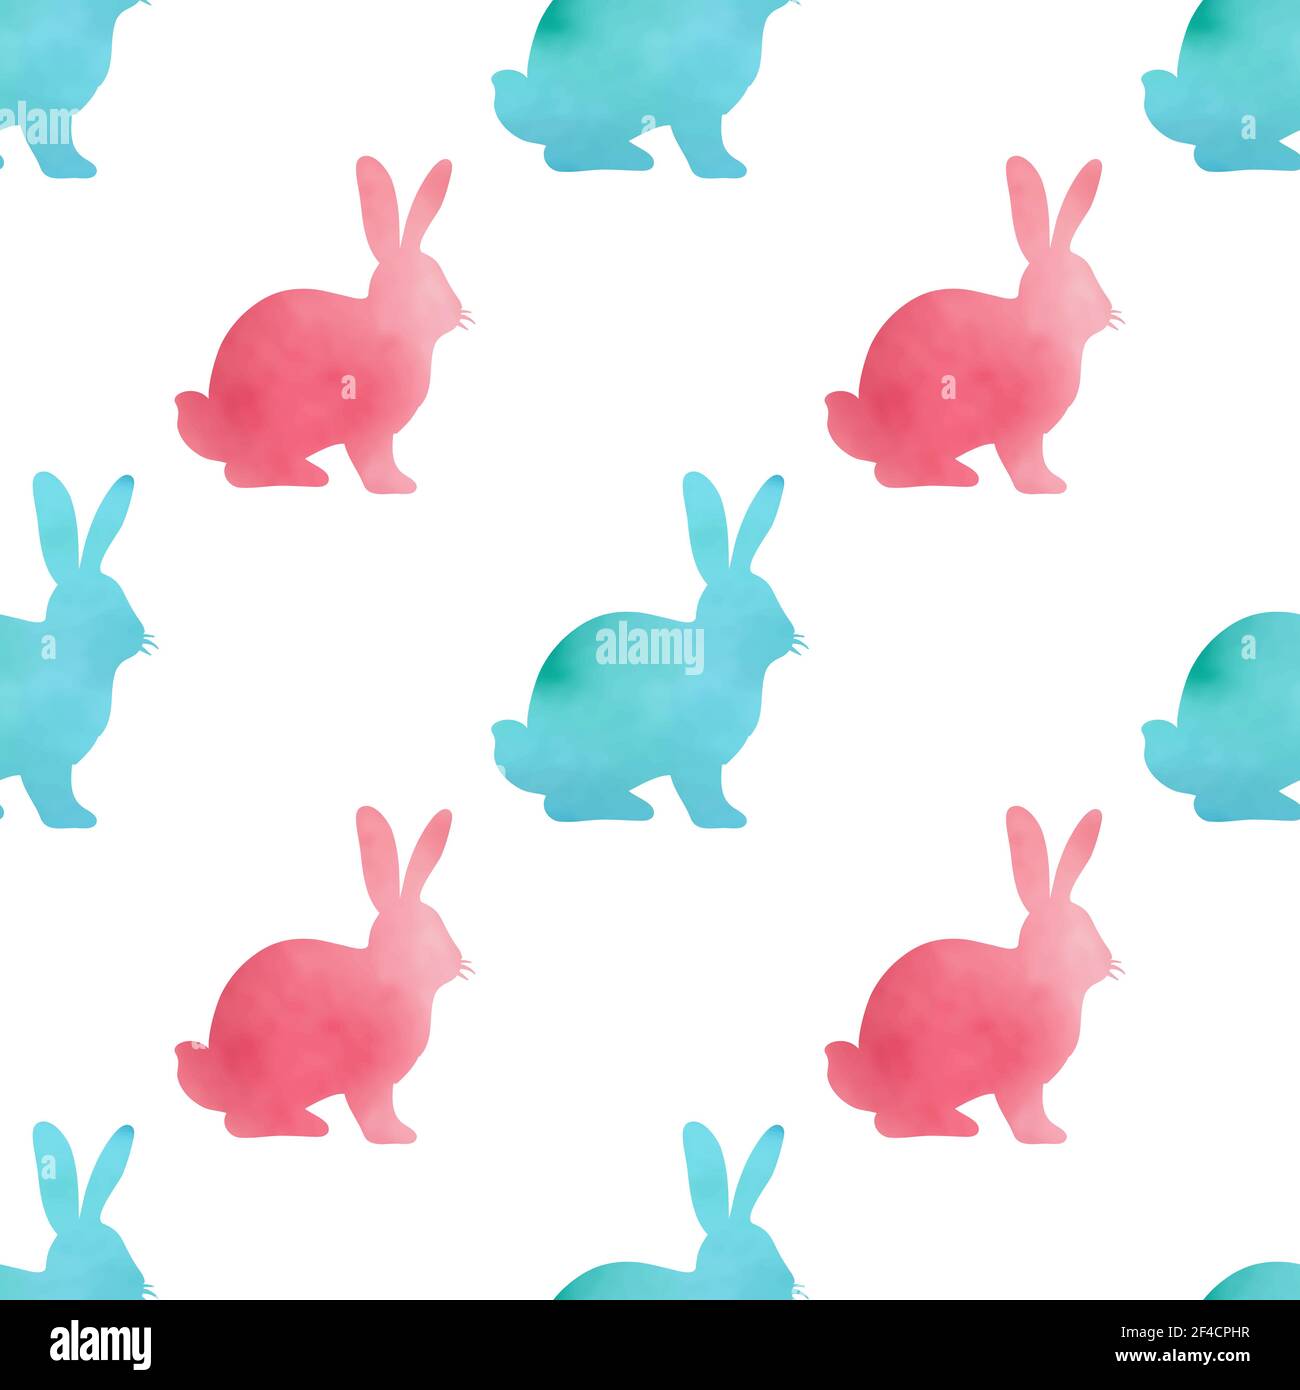 Aquarell Ostern nahtlose Muster mit grün und rosa Kaninchen auf einem weißen Hintergrund. Vector Illustration. Stock Vektor